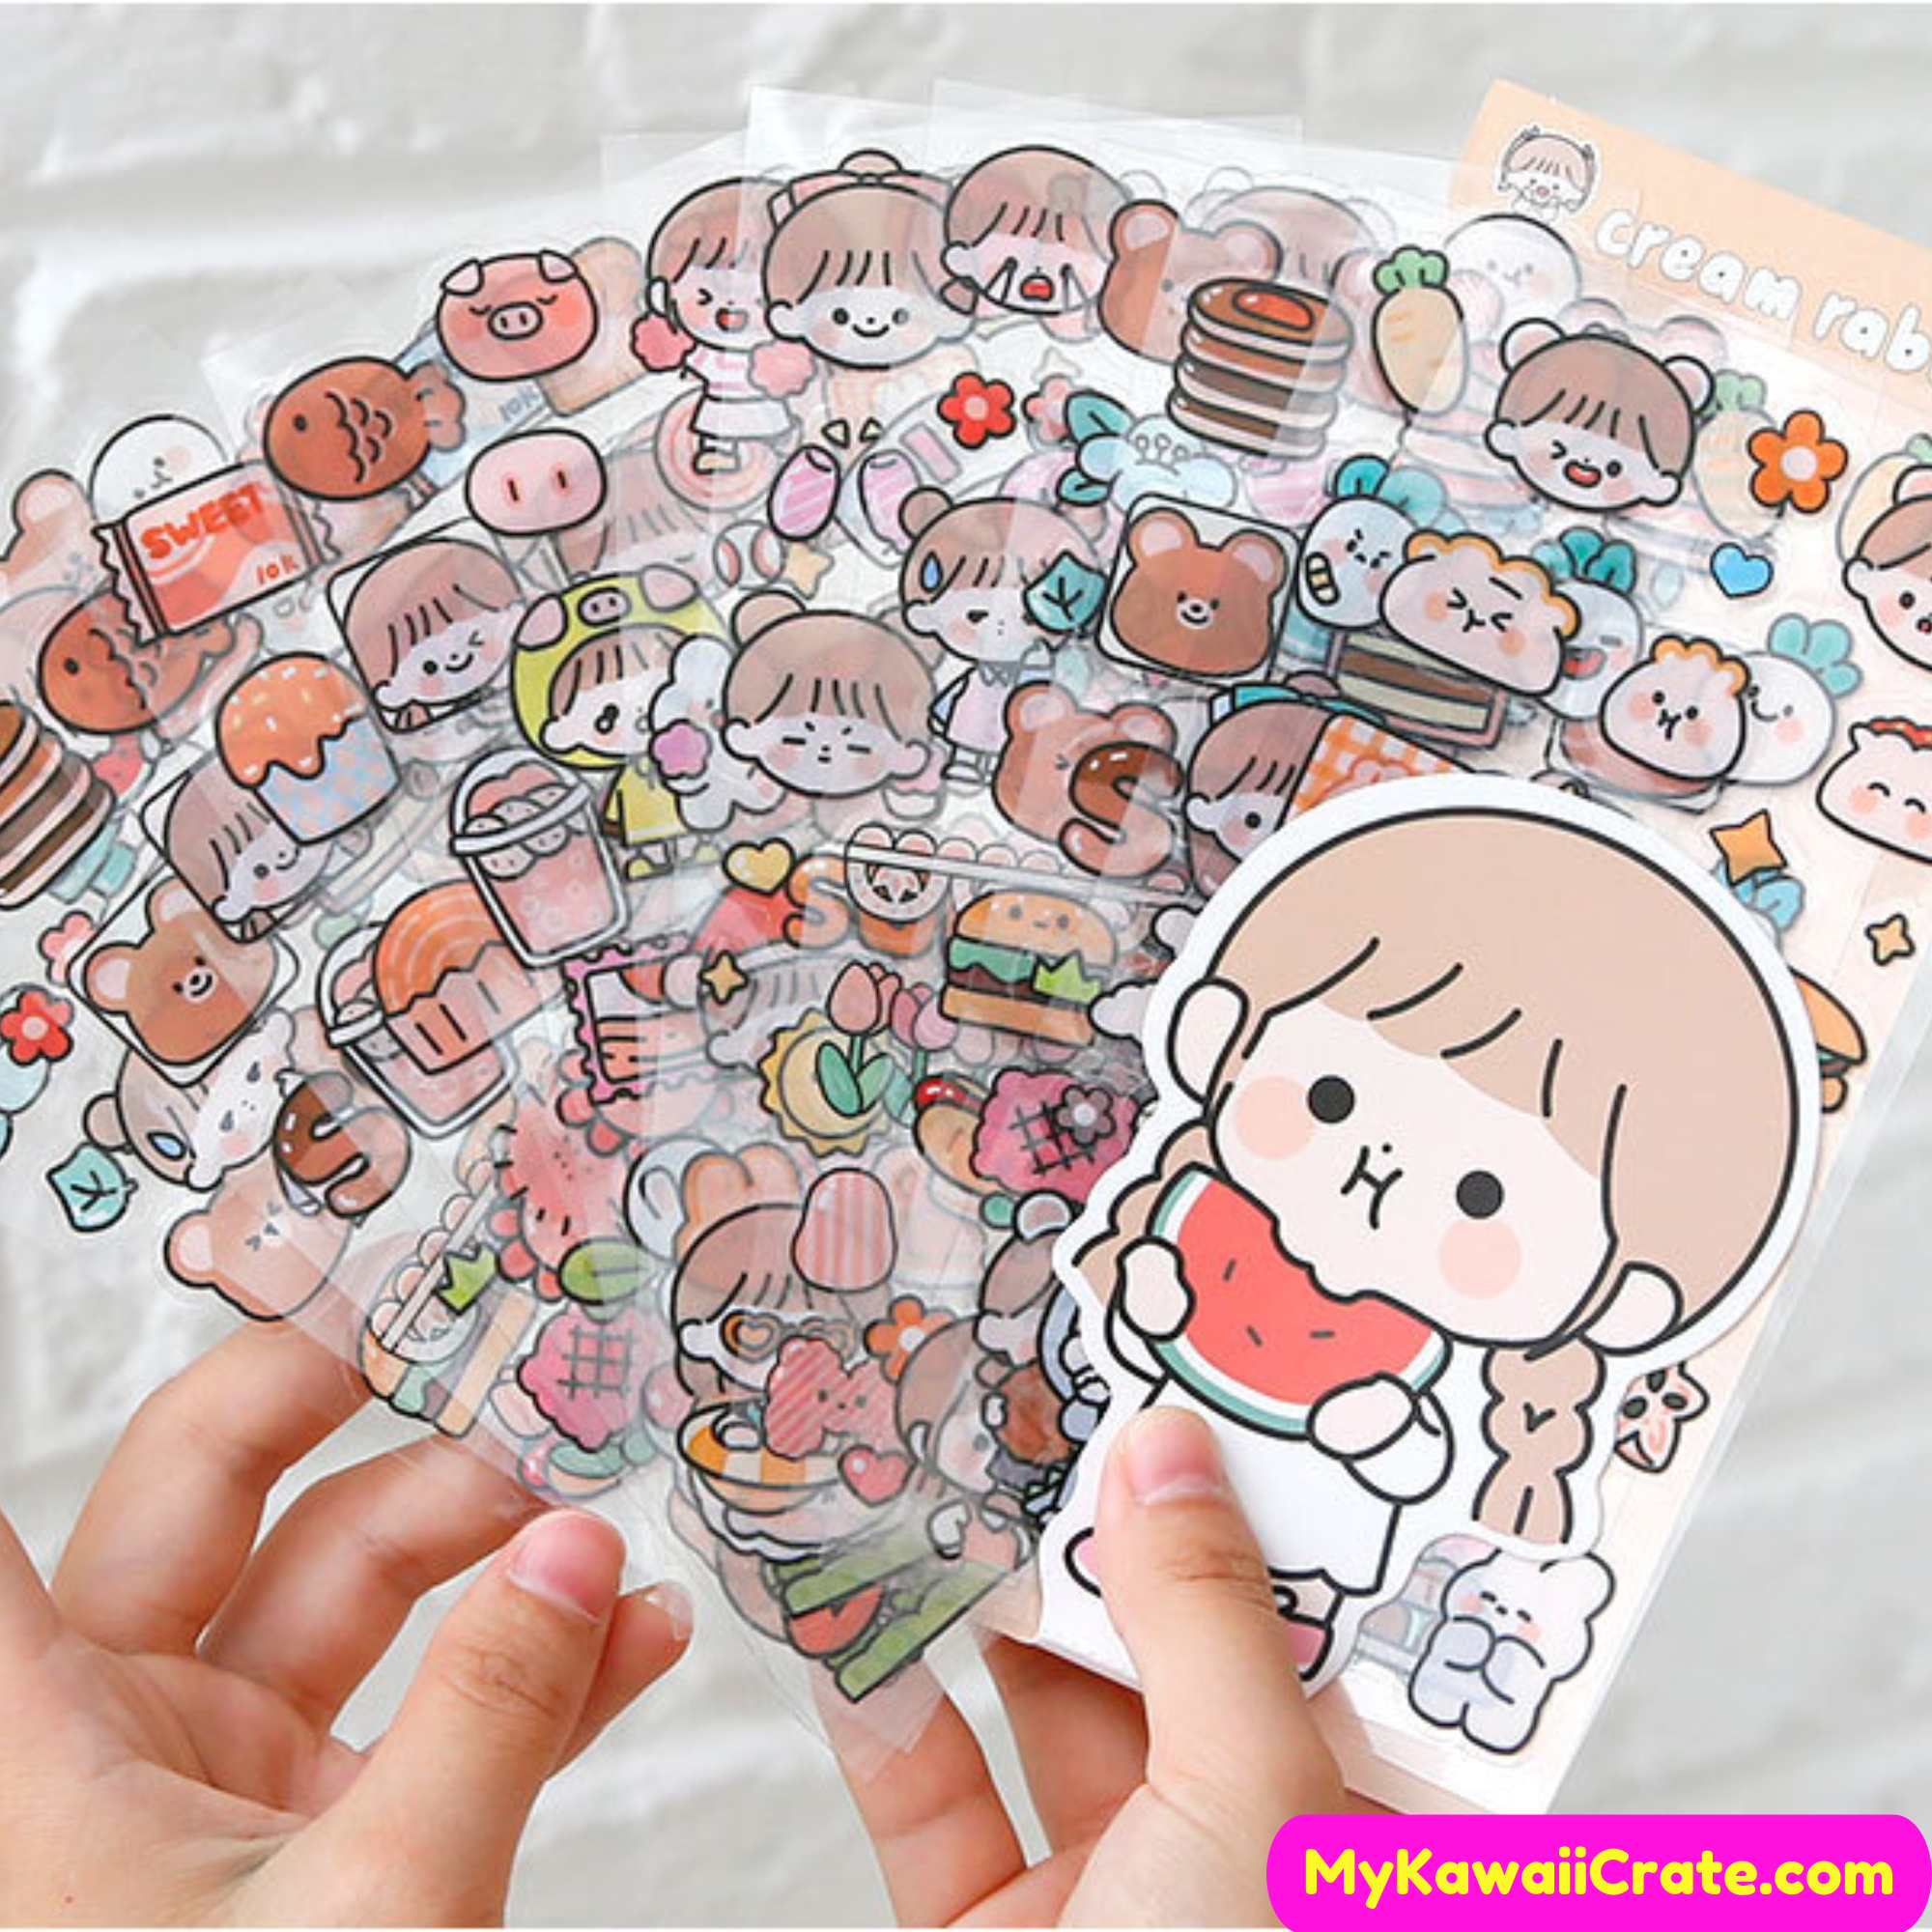 Cute stickers